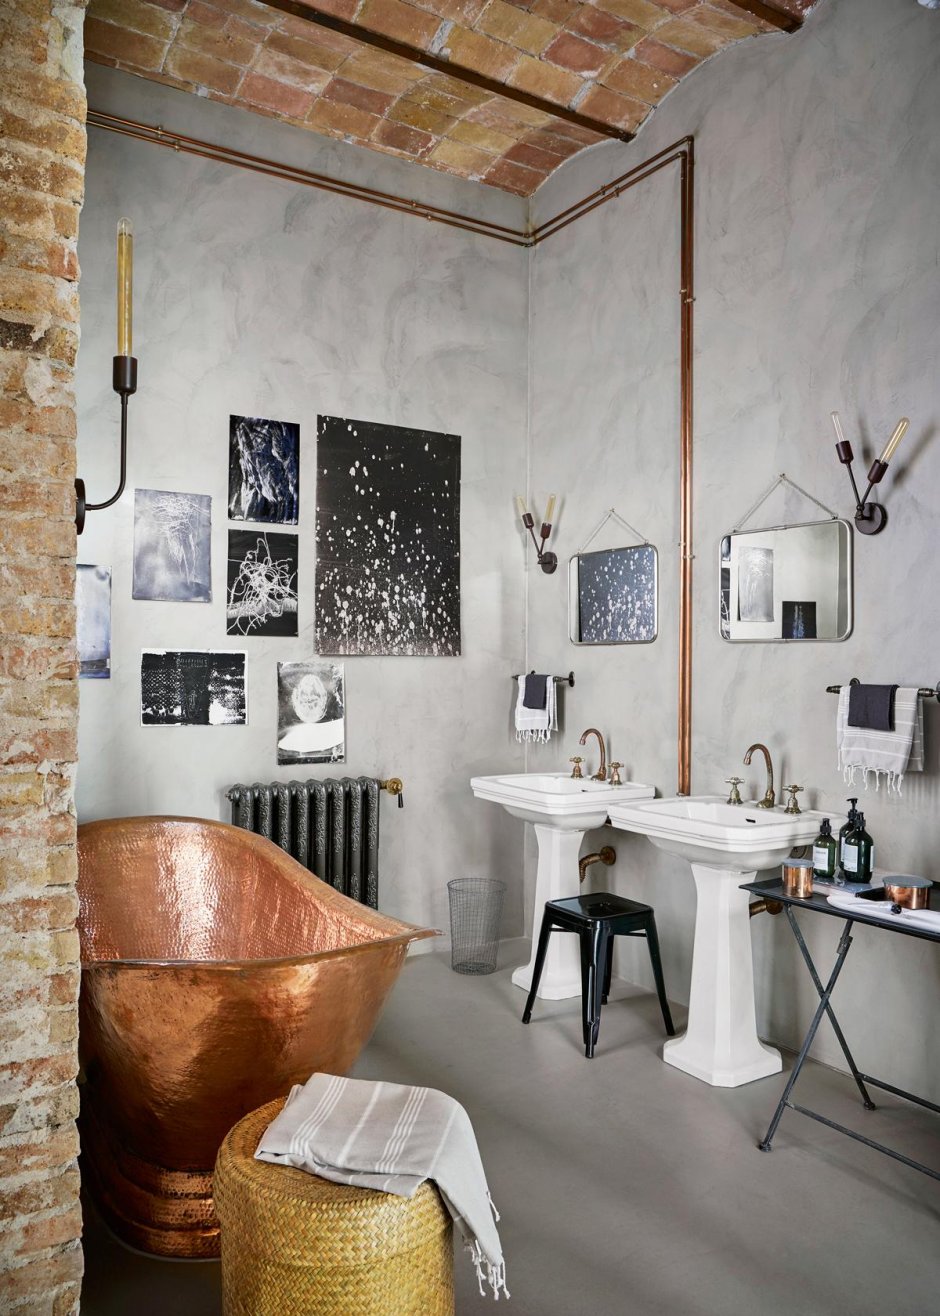 Ванная комната в Индустриальном стиле